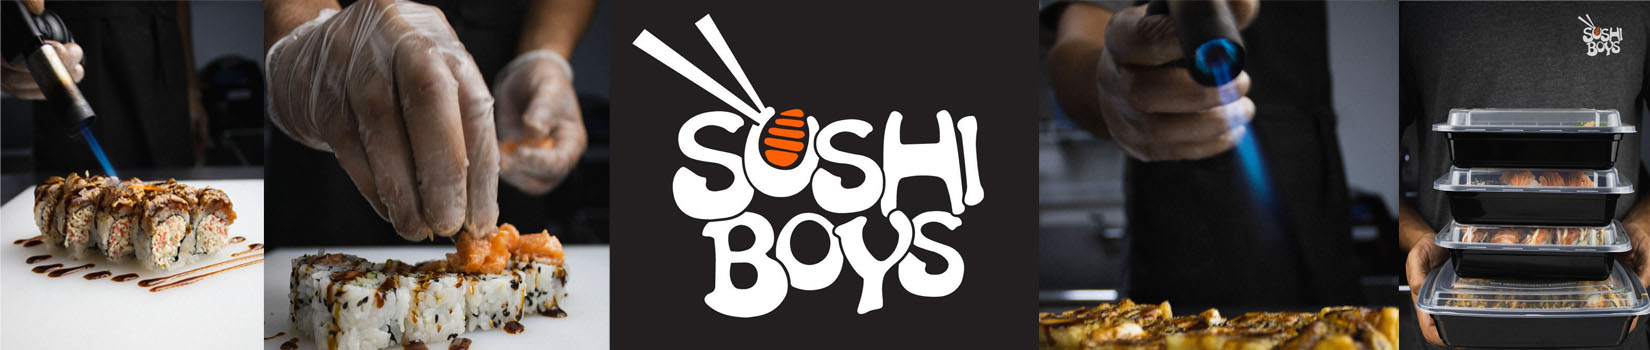 Sushi Boys 868